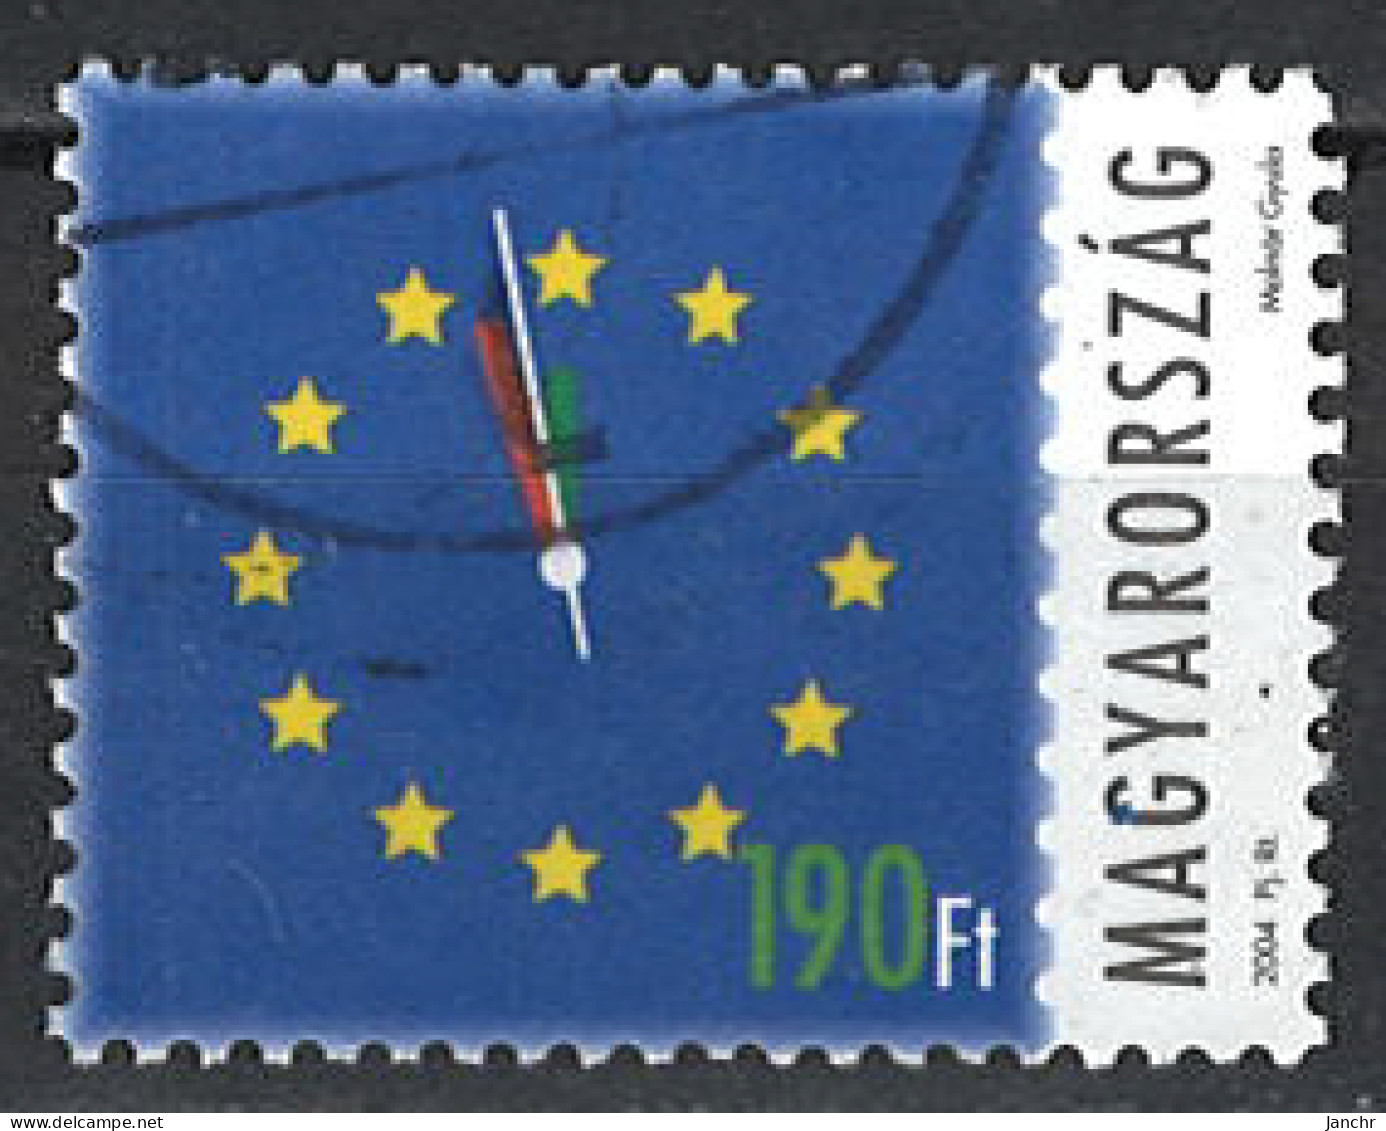 Ungarn Hungary 2004. Mi.Nr. 4844, Used O - Usati